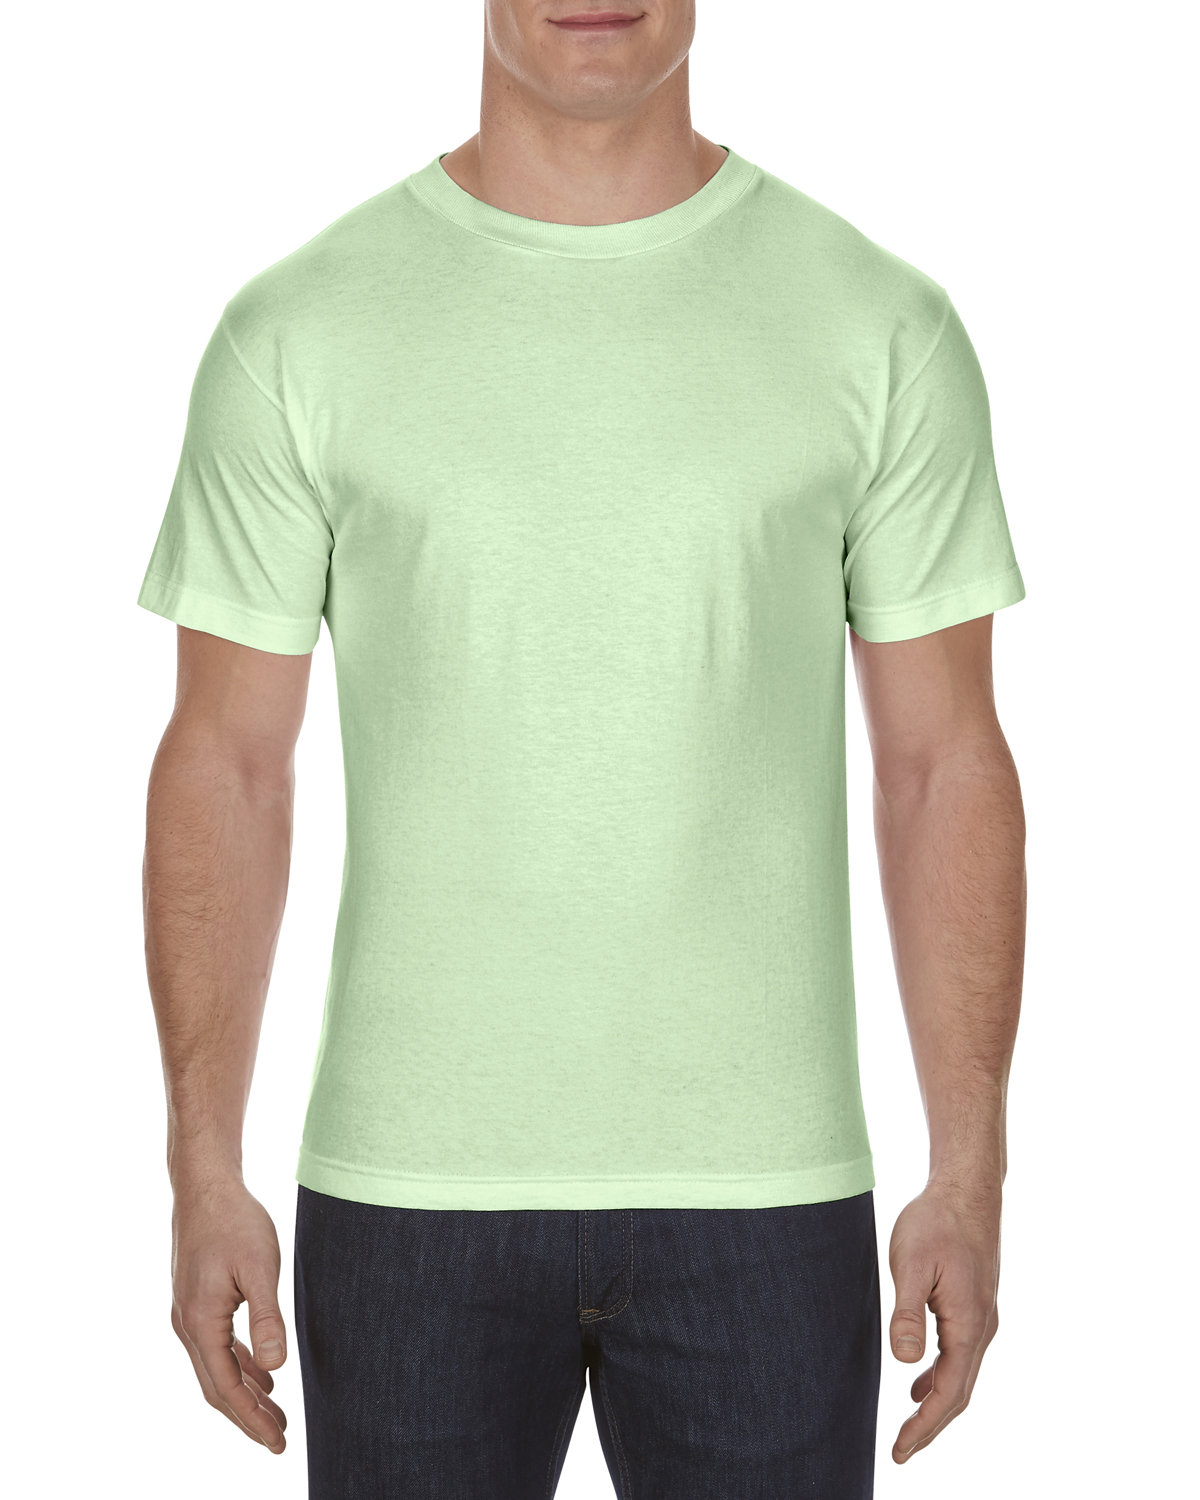 Alstyle Adult 6.0 oz., 100% Cotton T-Shirt MINT 